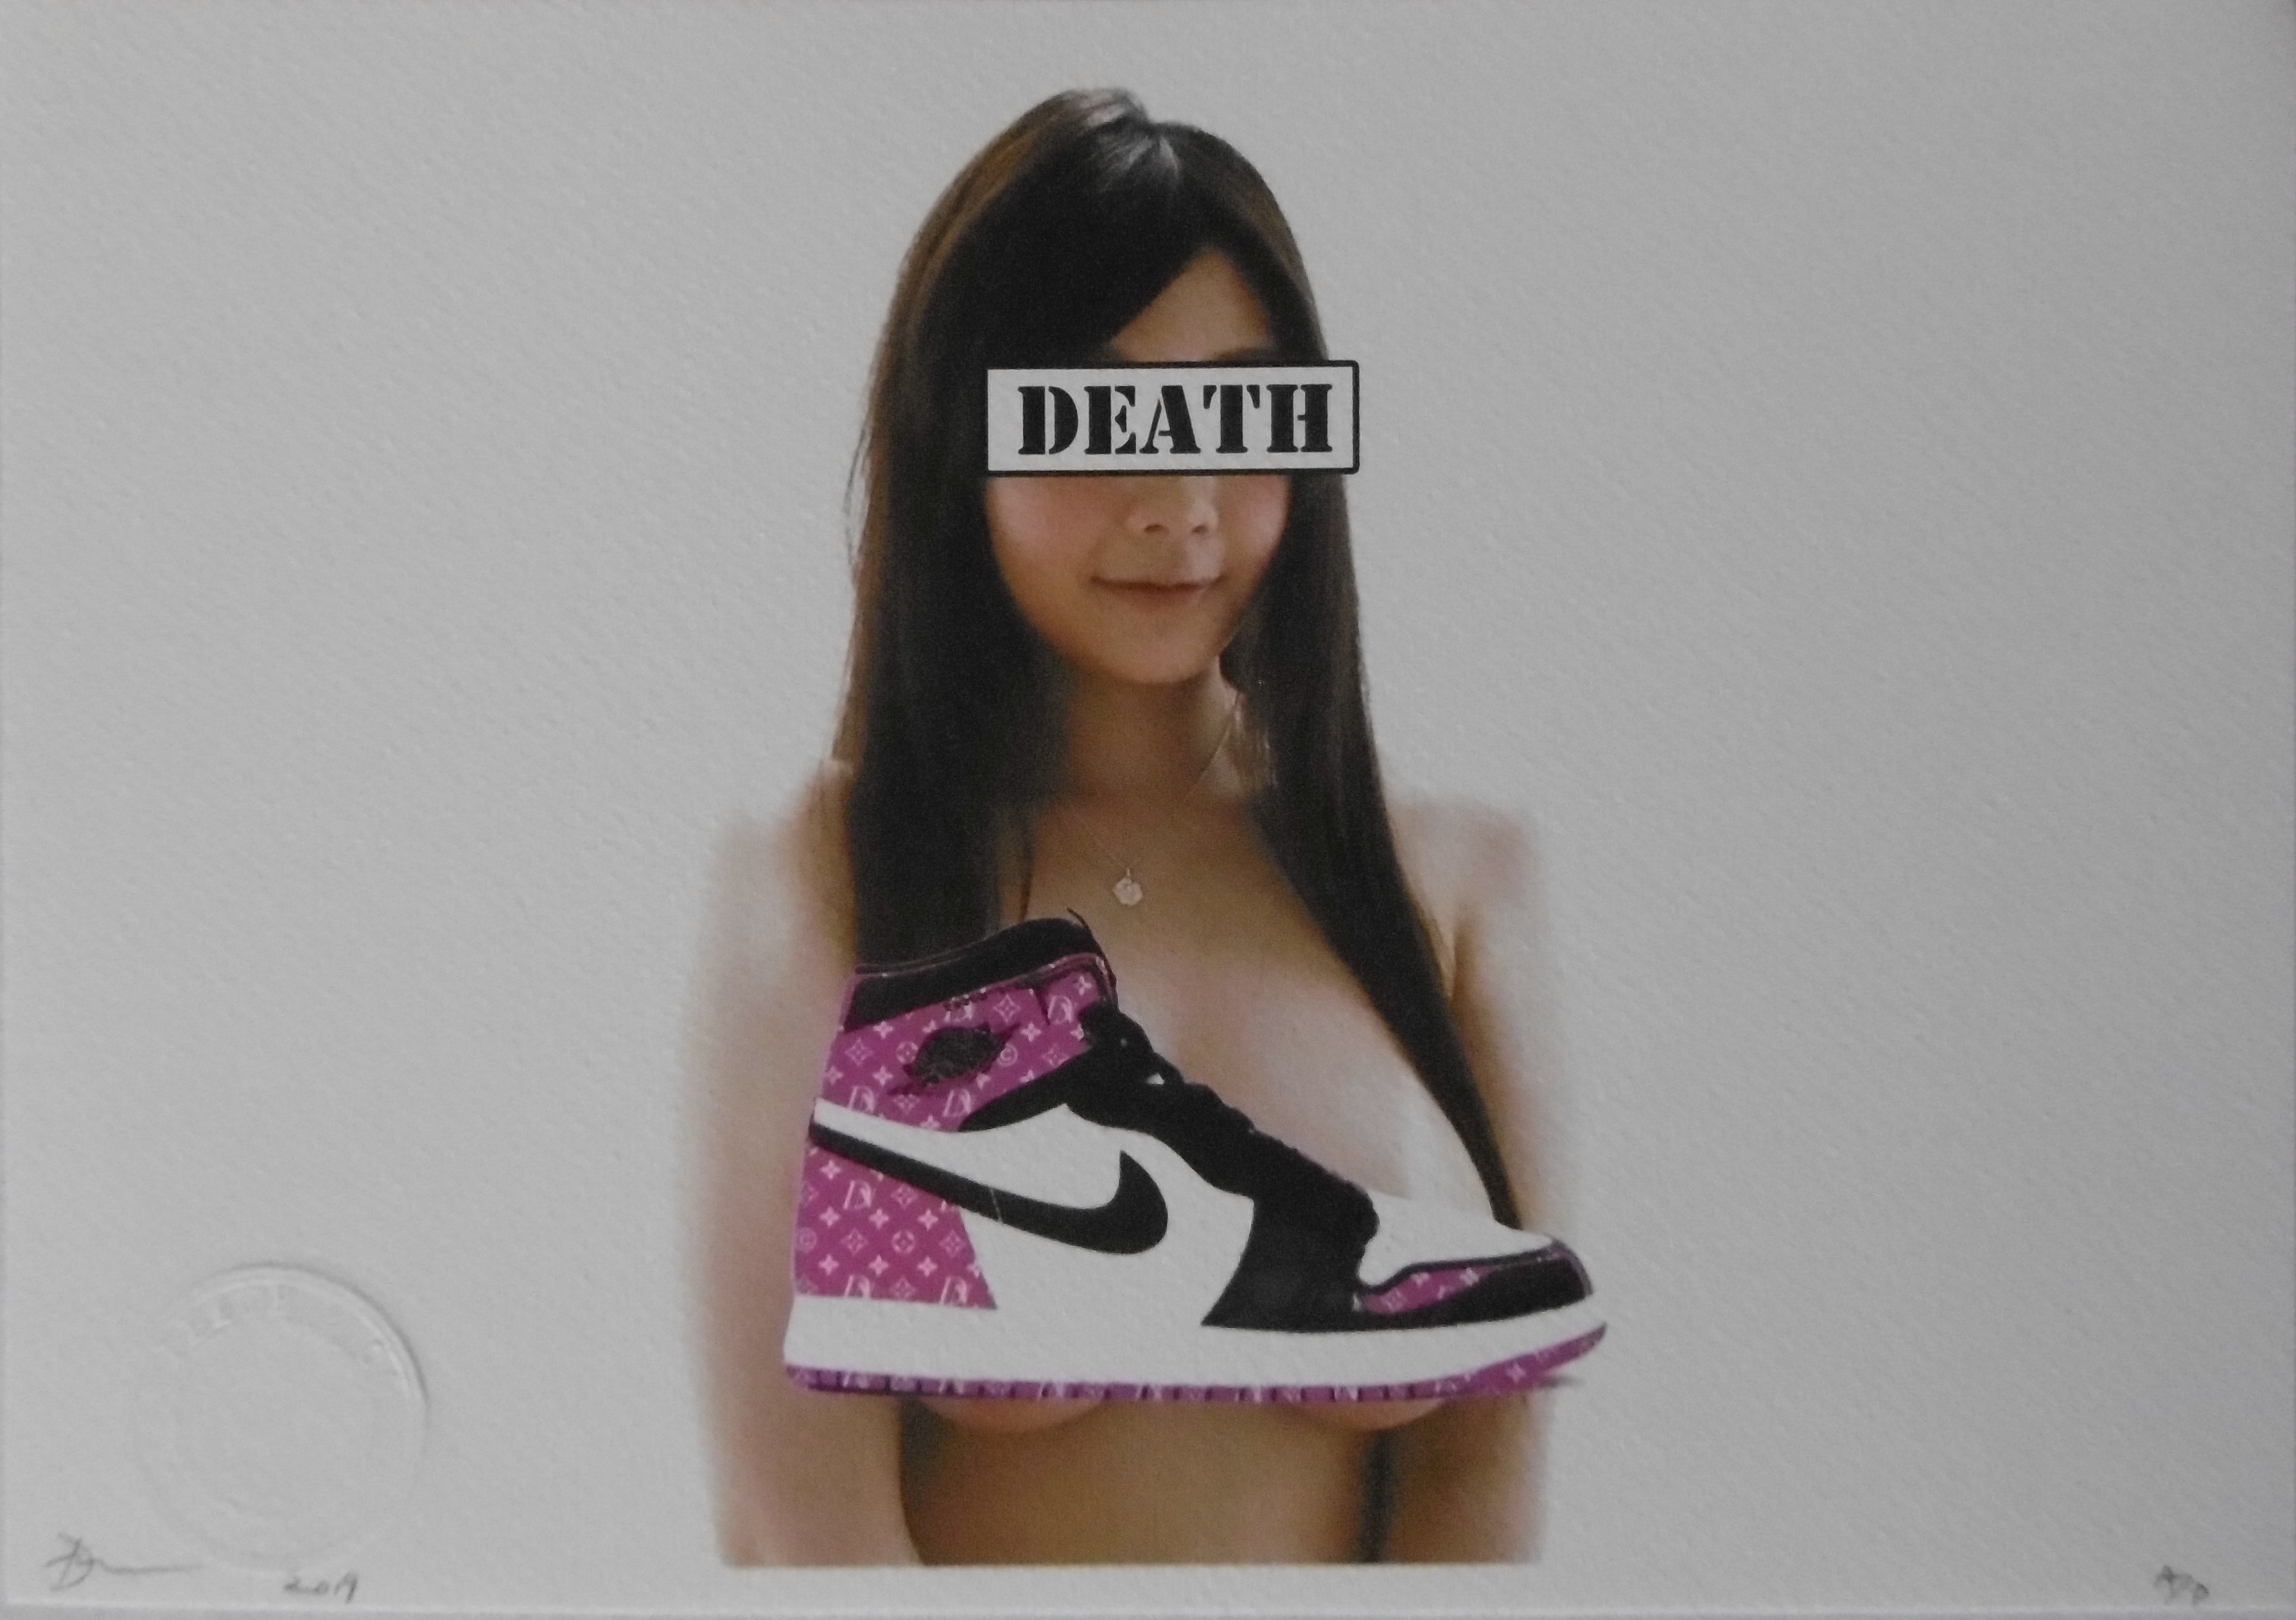 escanear vencimiento Elasticidad Death NYC - Death Nike, 2019 - Serigrafía firmada y numerada - Street art -  Plazzart